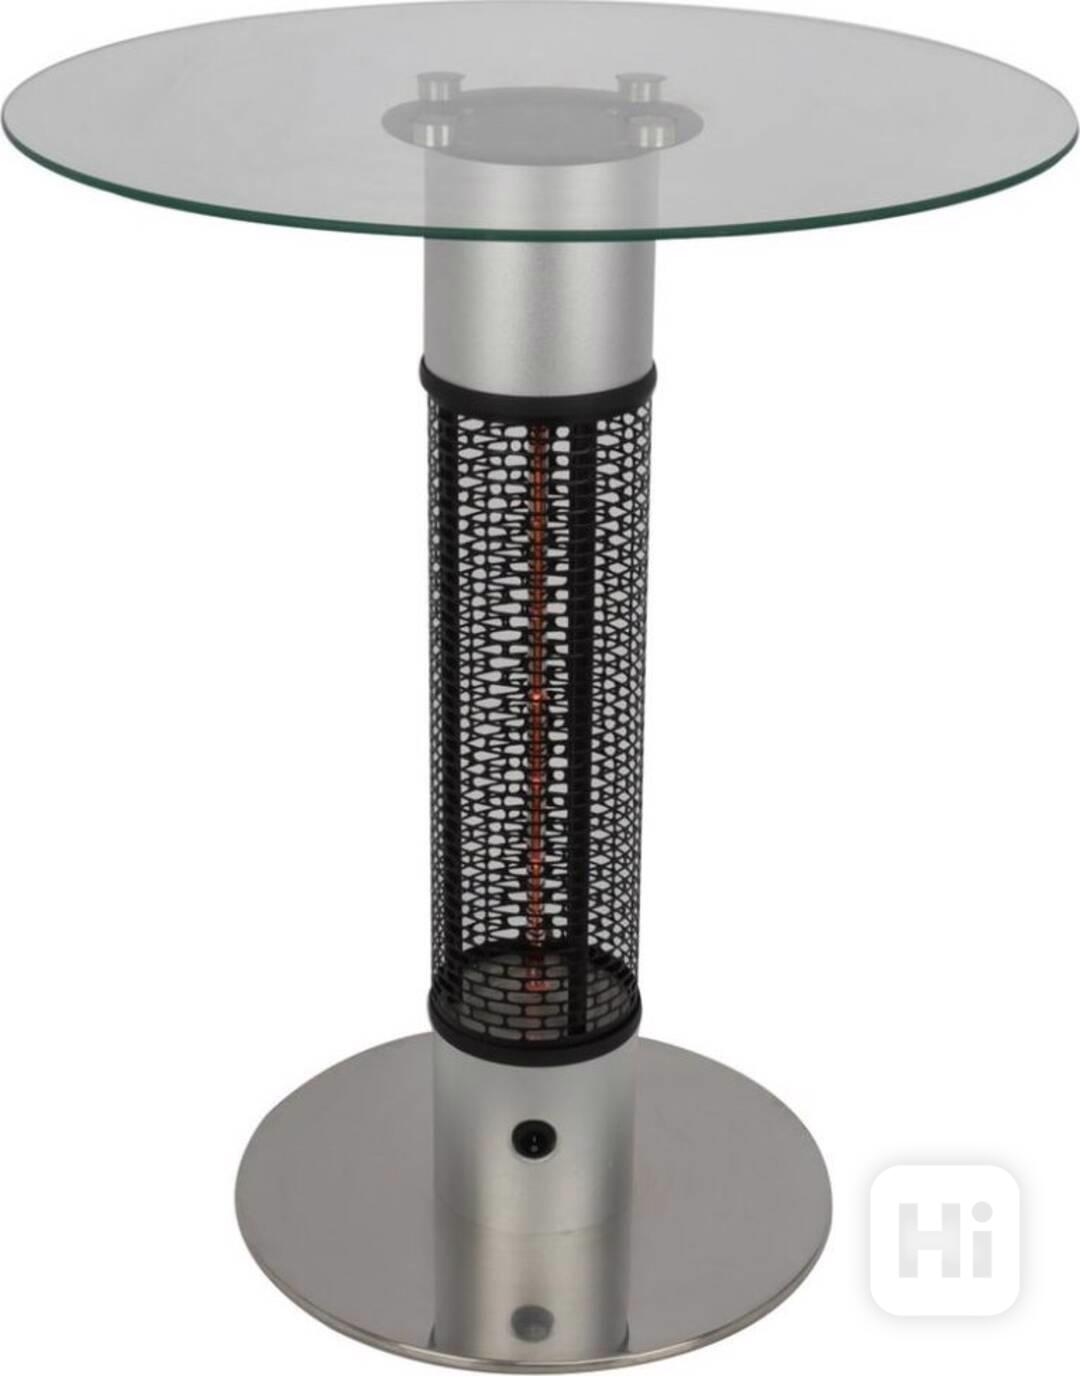 Luxusní stůl s vytápěním - foto 1